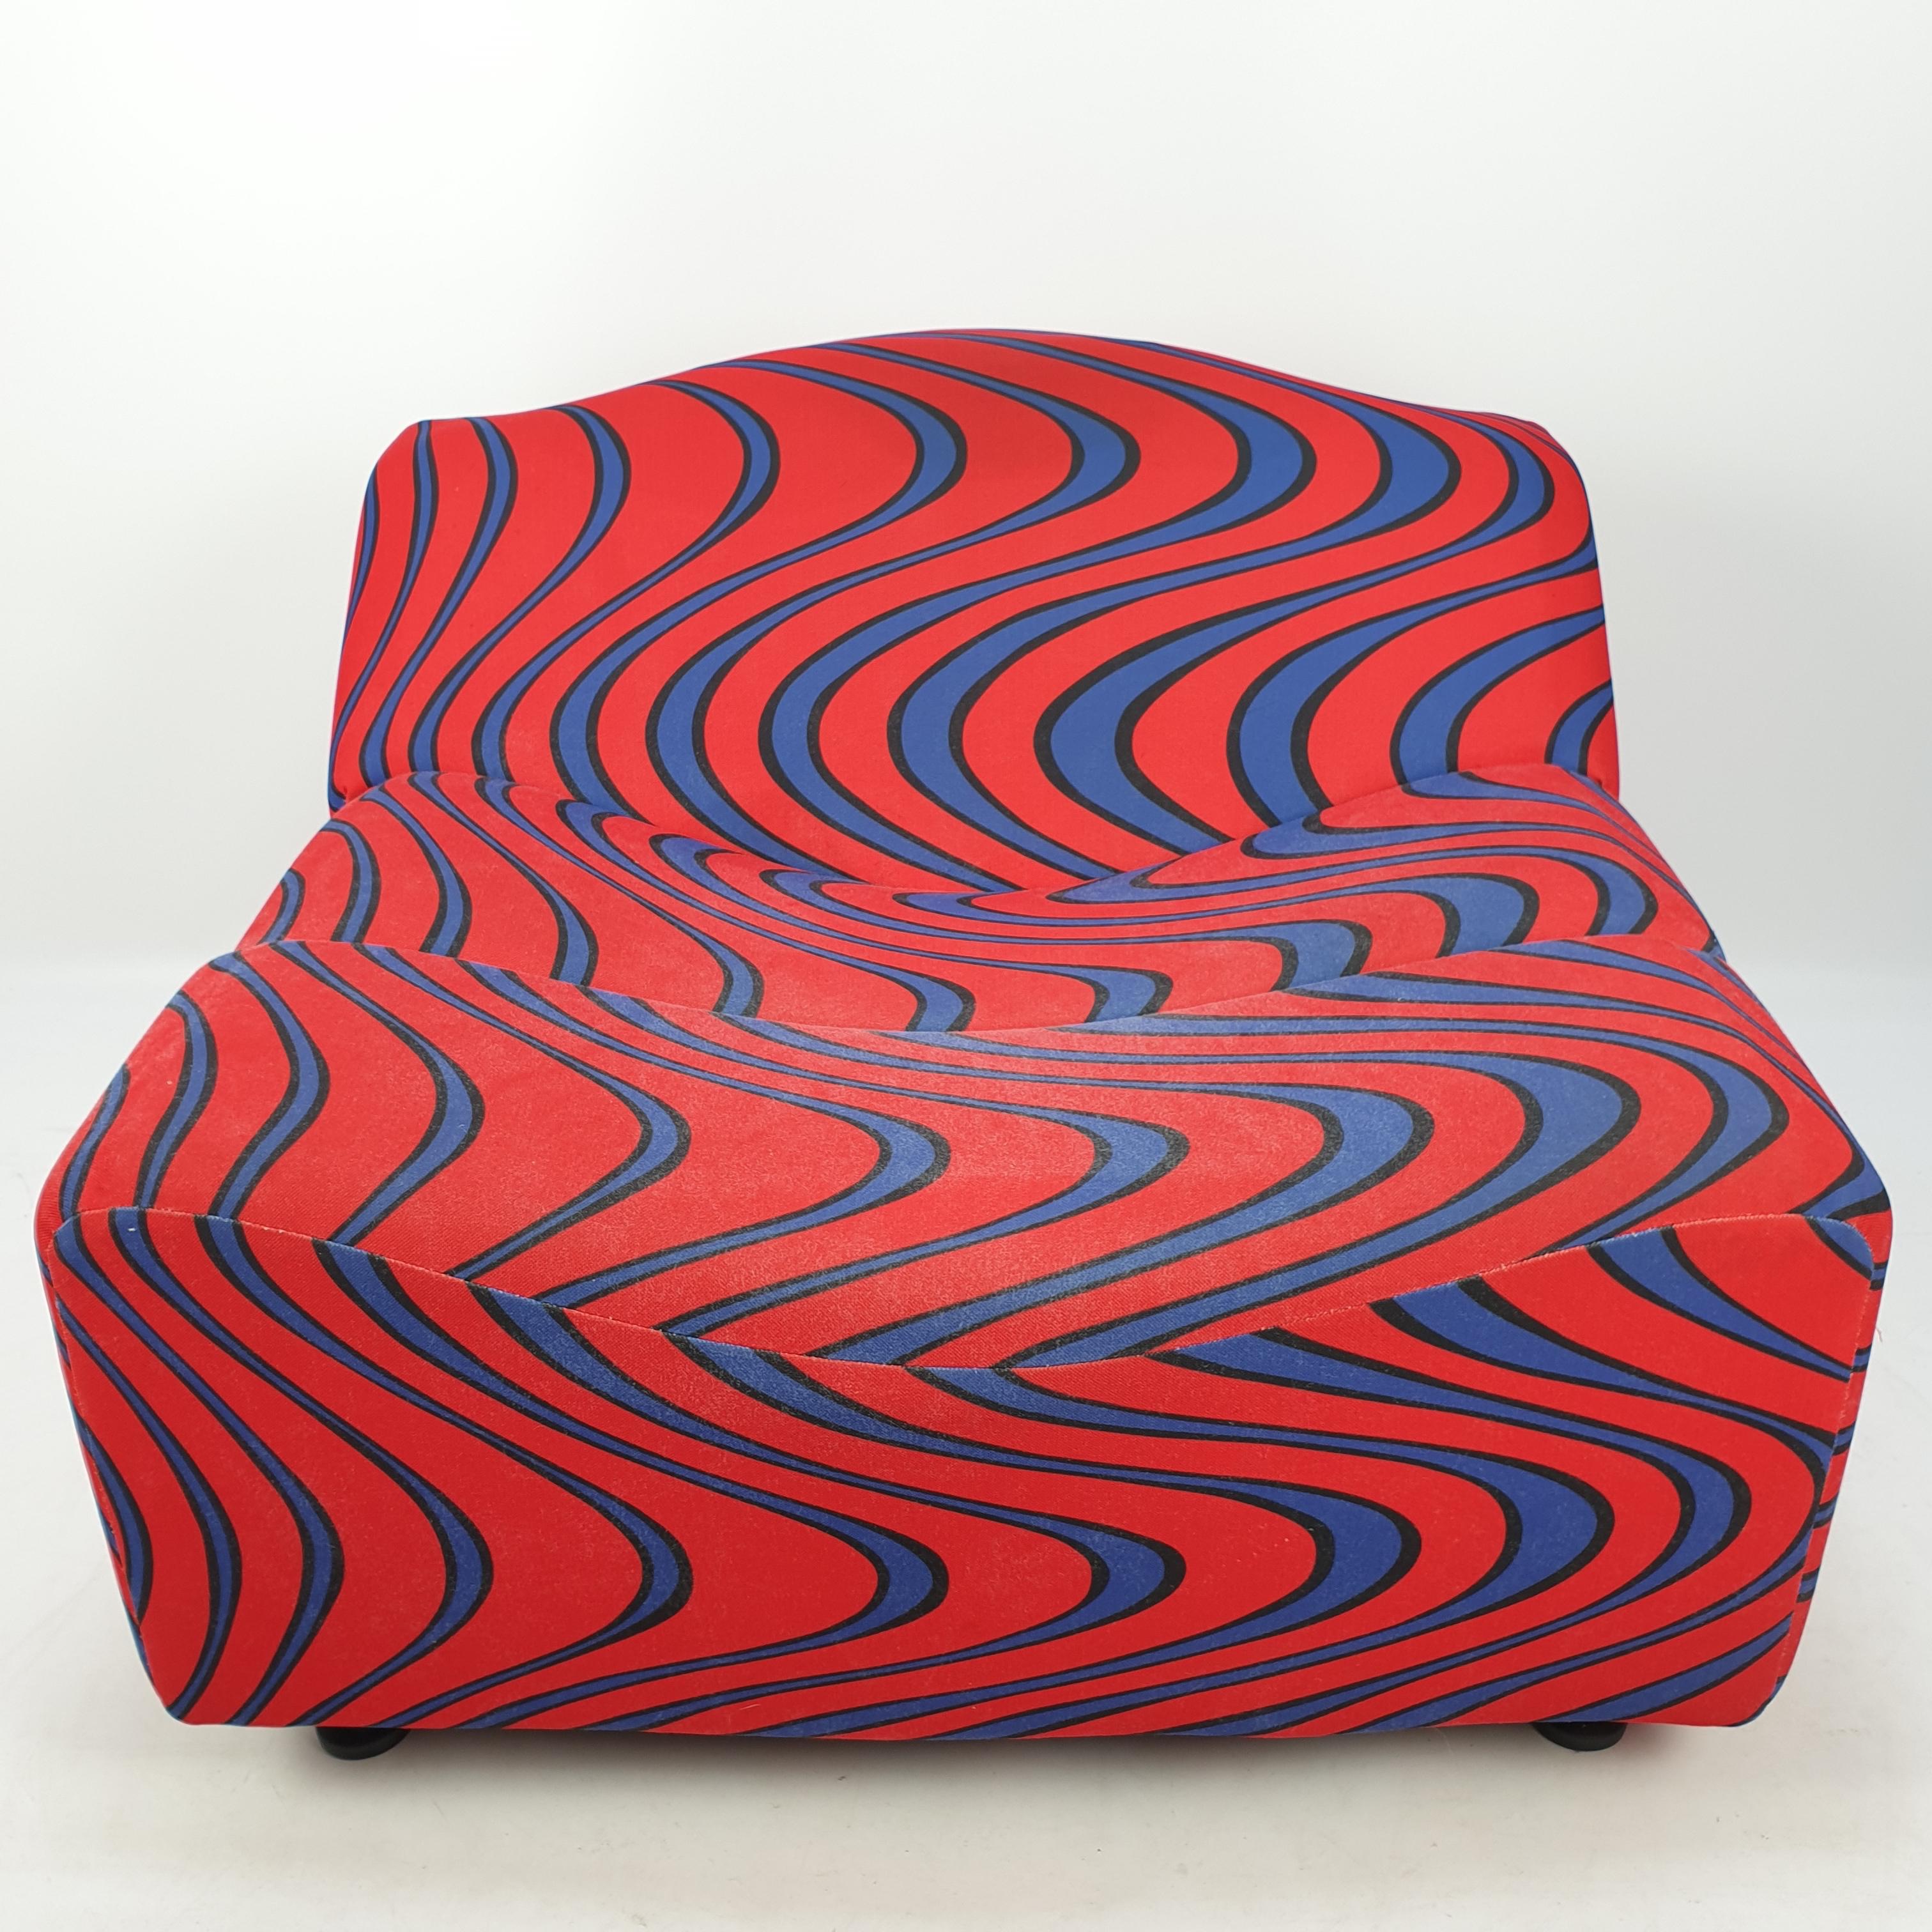 Étonnant canapé sculptural ABCD à une place, conçu par Pierre Paulin pour Artifort en 1968. Le canapé est composé de trois segments distincts caractérisés par des courbes en forme de vagues. Les sièges incurvés et légèrement inclinés offrent à